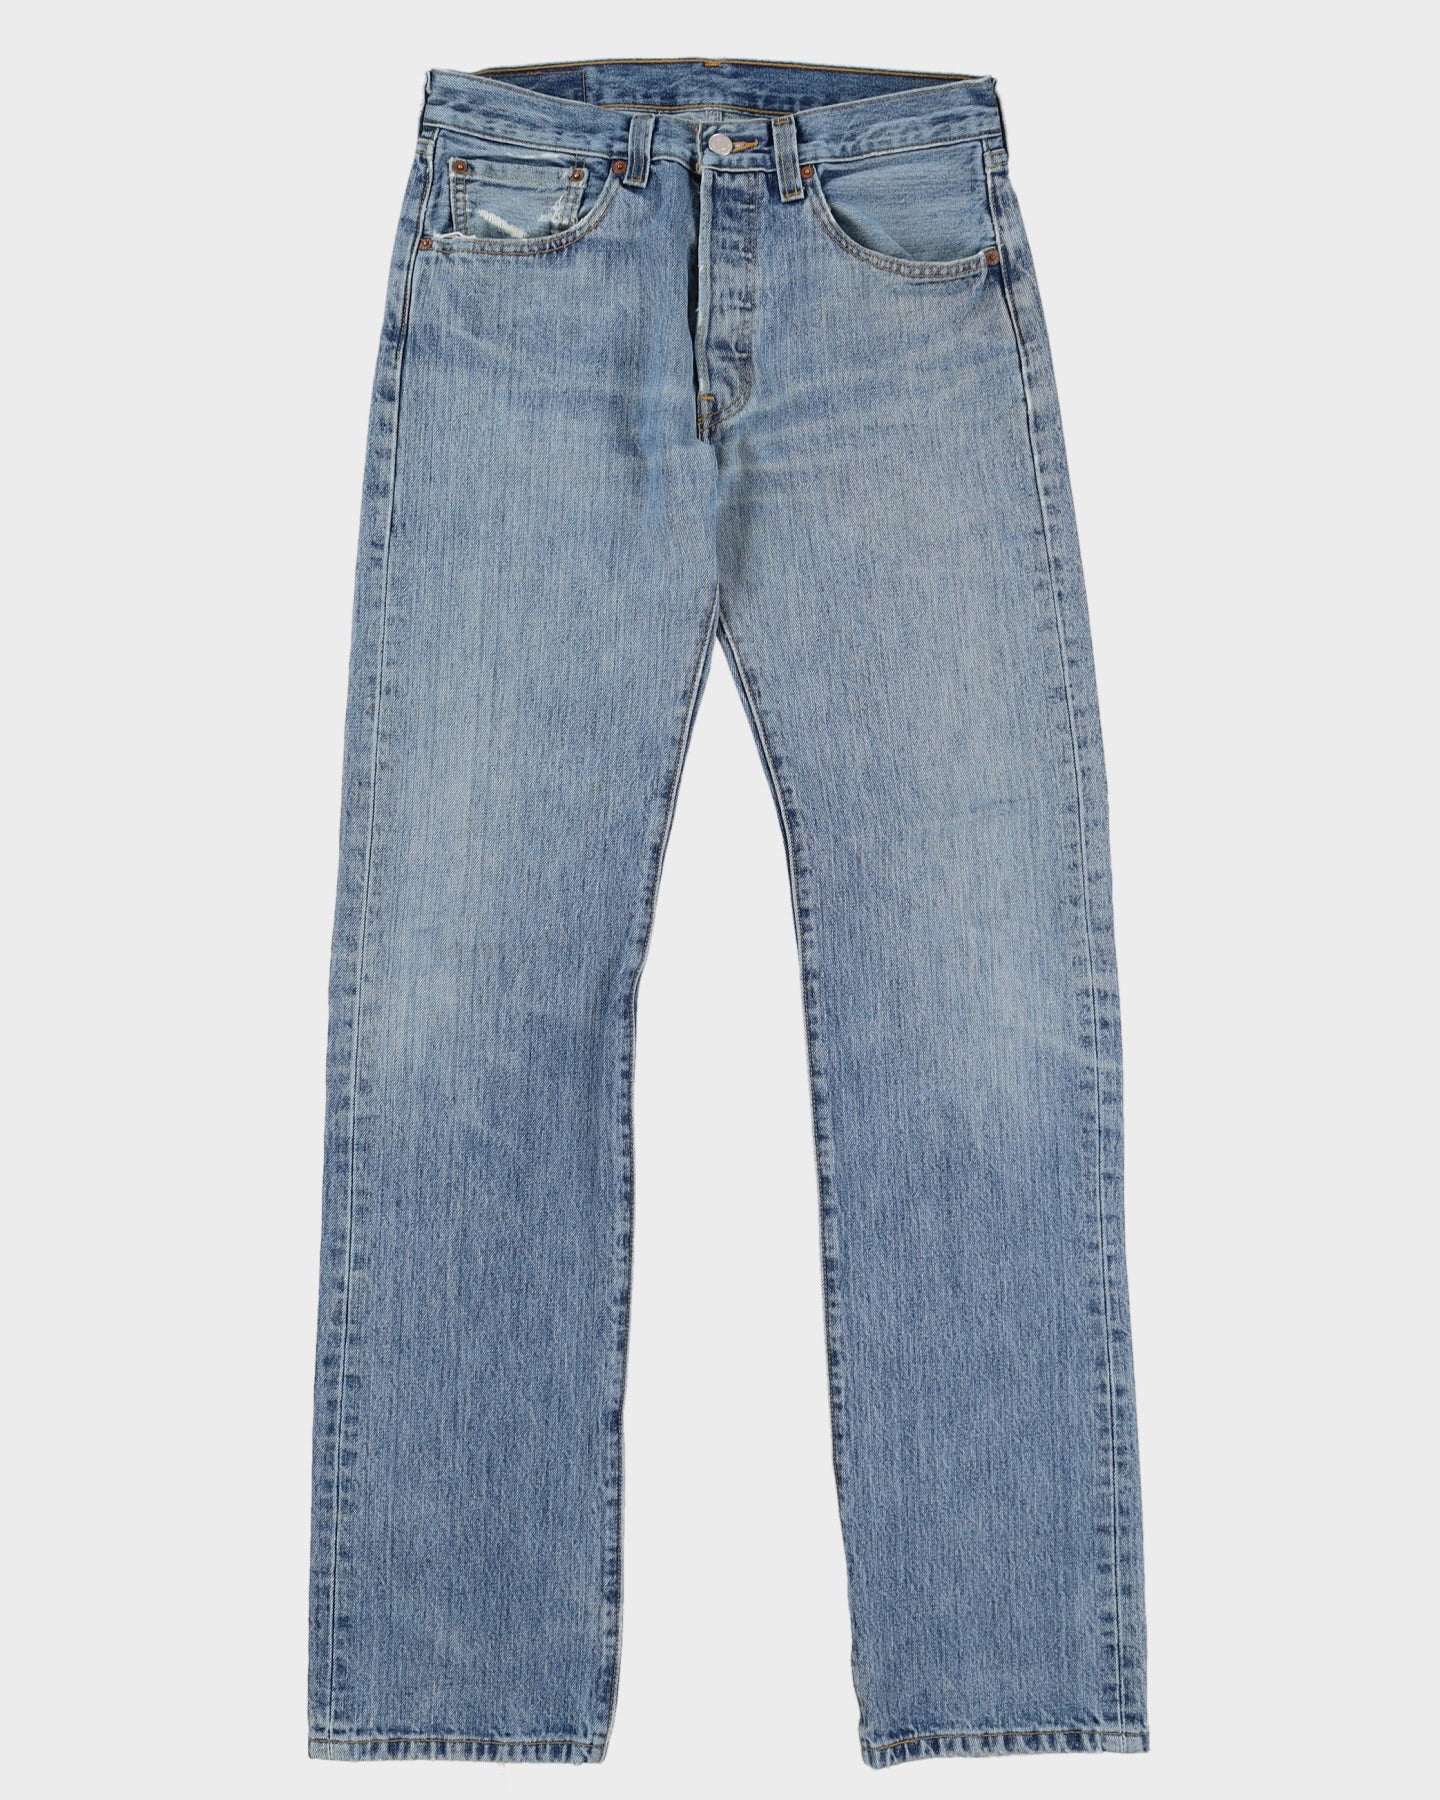 Levi's 501 Blue Jeans - W30 L34